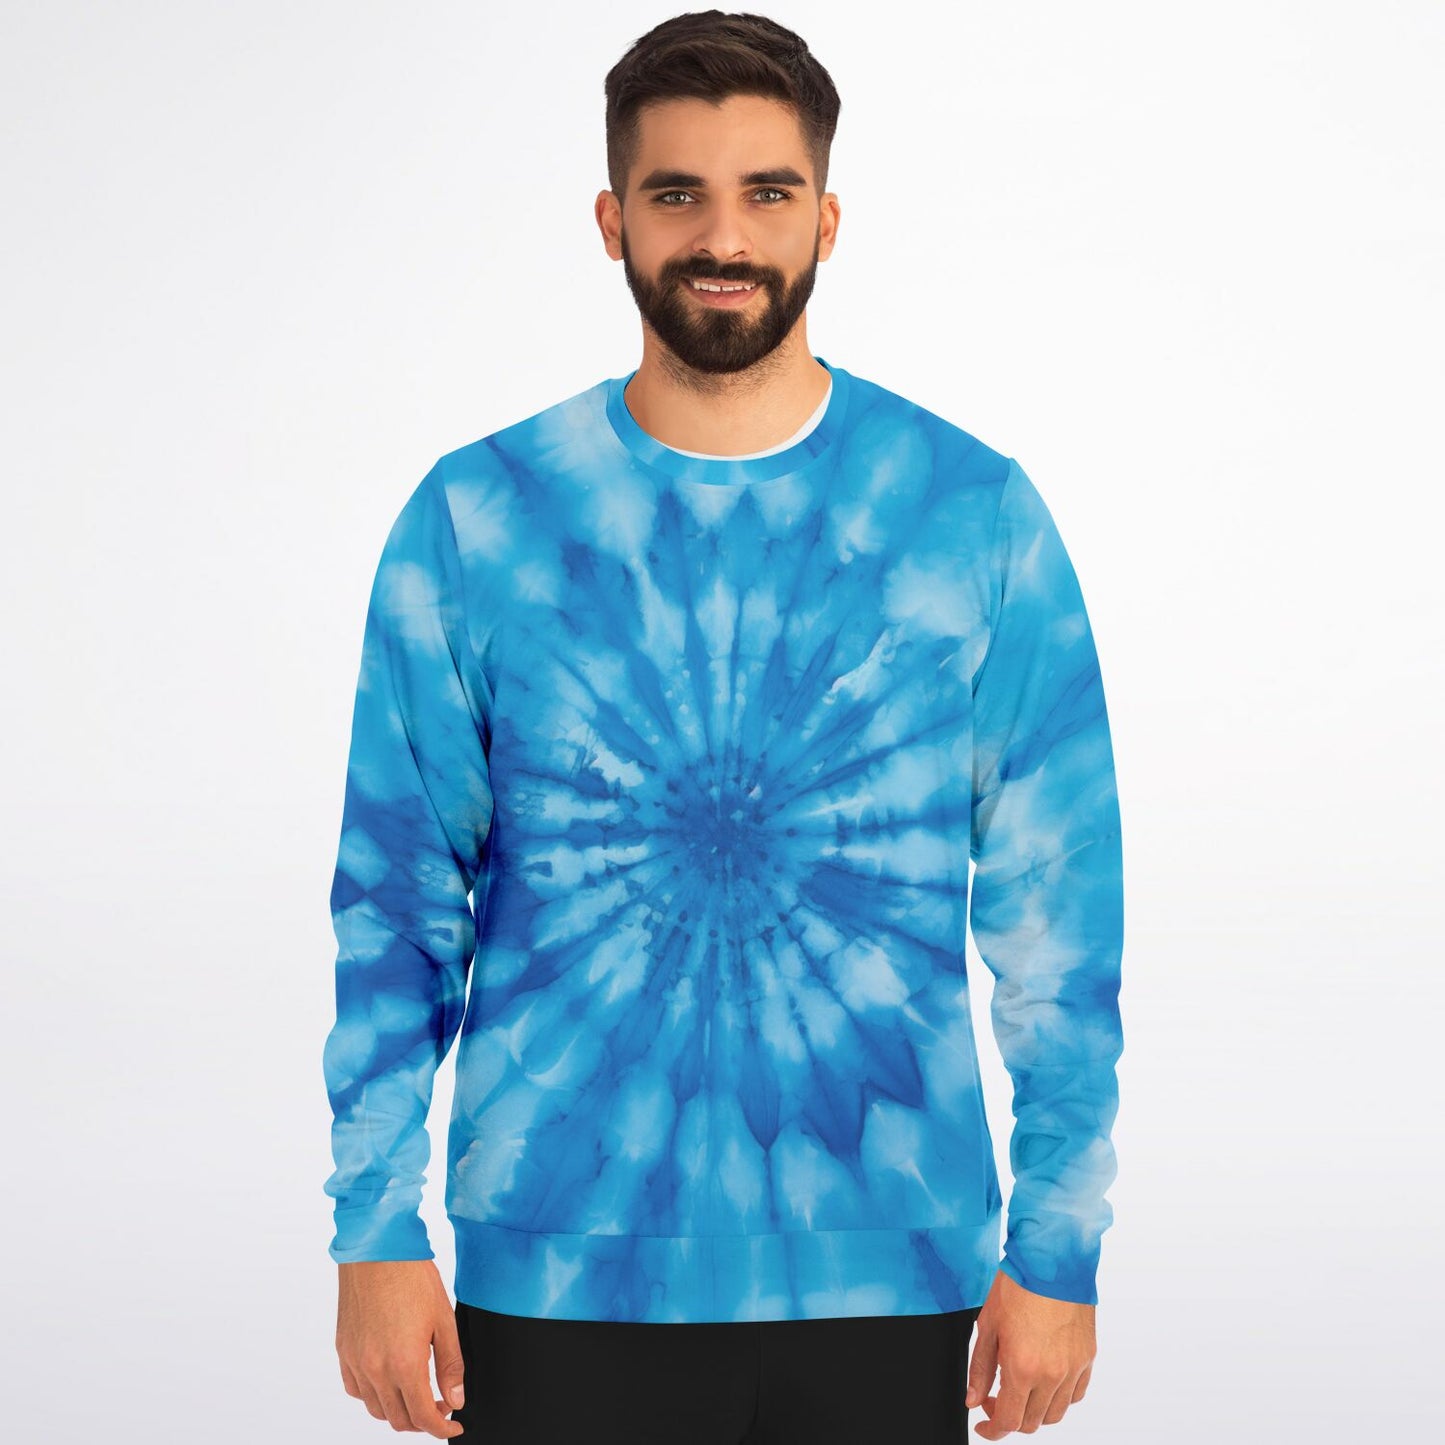 Blue Tie Dye Sweatshirt, Spiral Graphic Crewneck Fleece Cotton Sweater Jumper Pullover Men Women Adult Aesthetic Designer Top